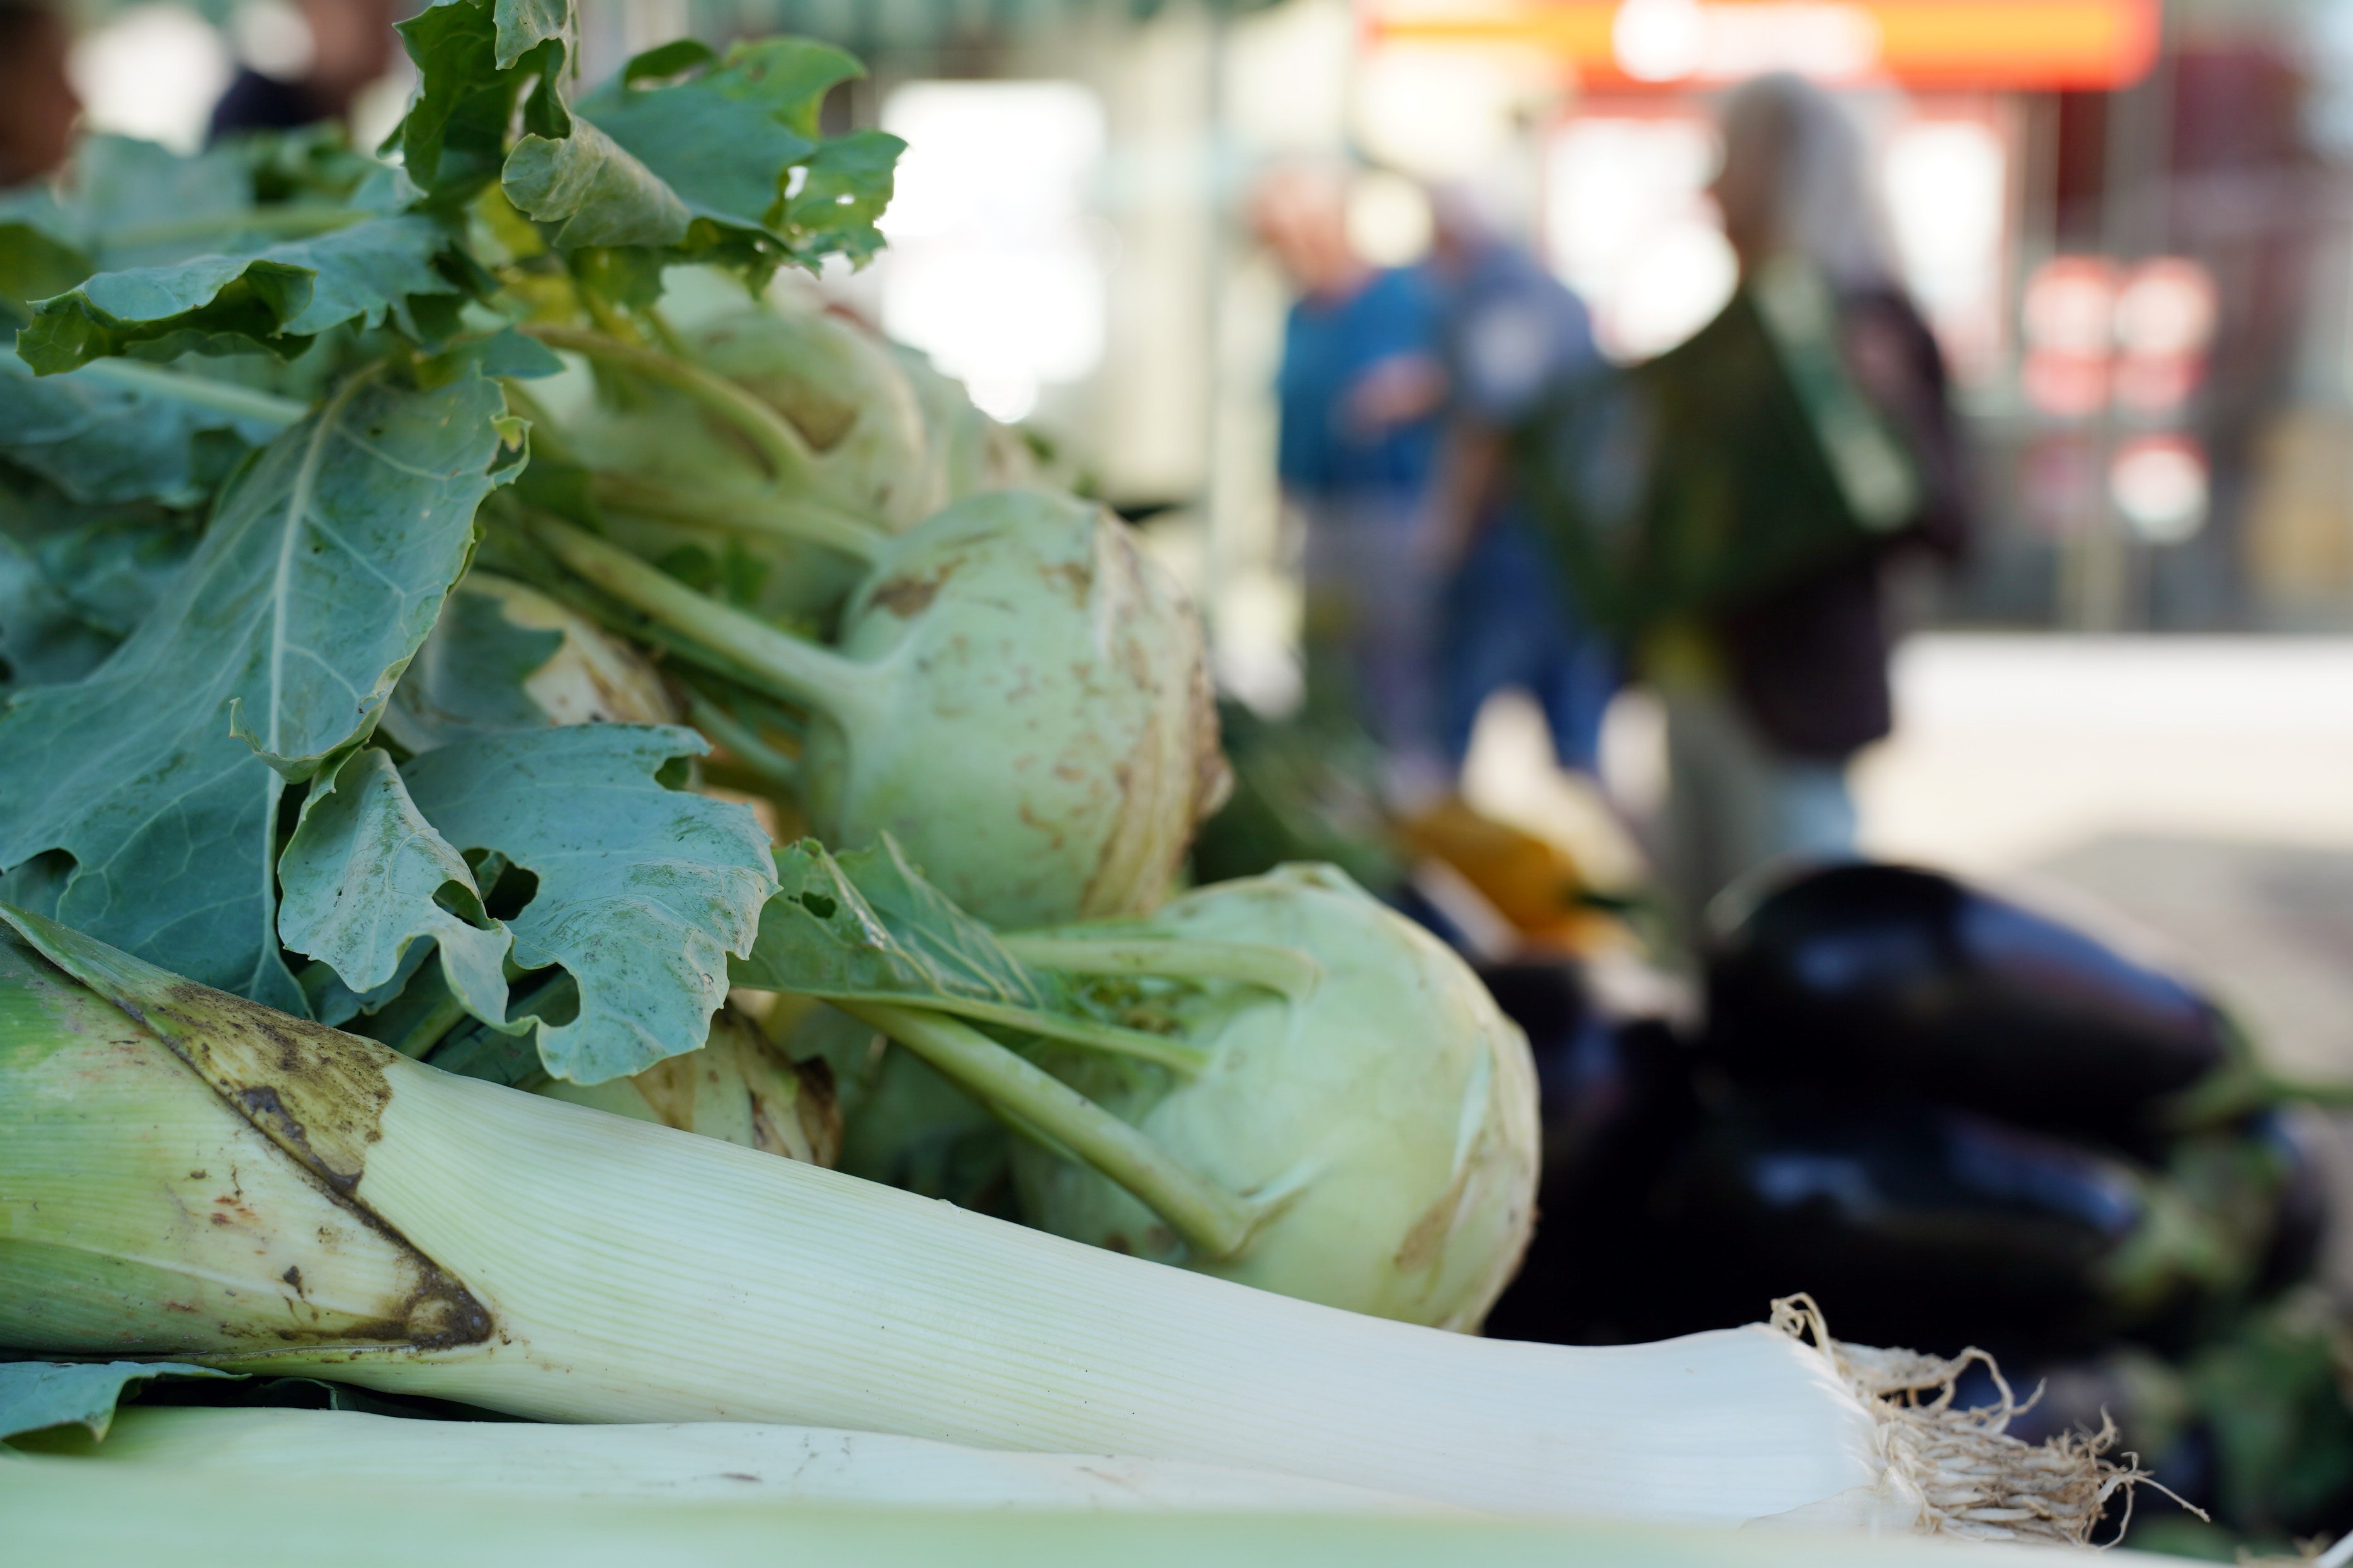  Bild zeigt Gemüsestand auf dem Wochenmarkt 